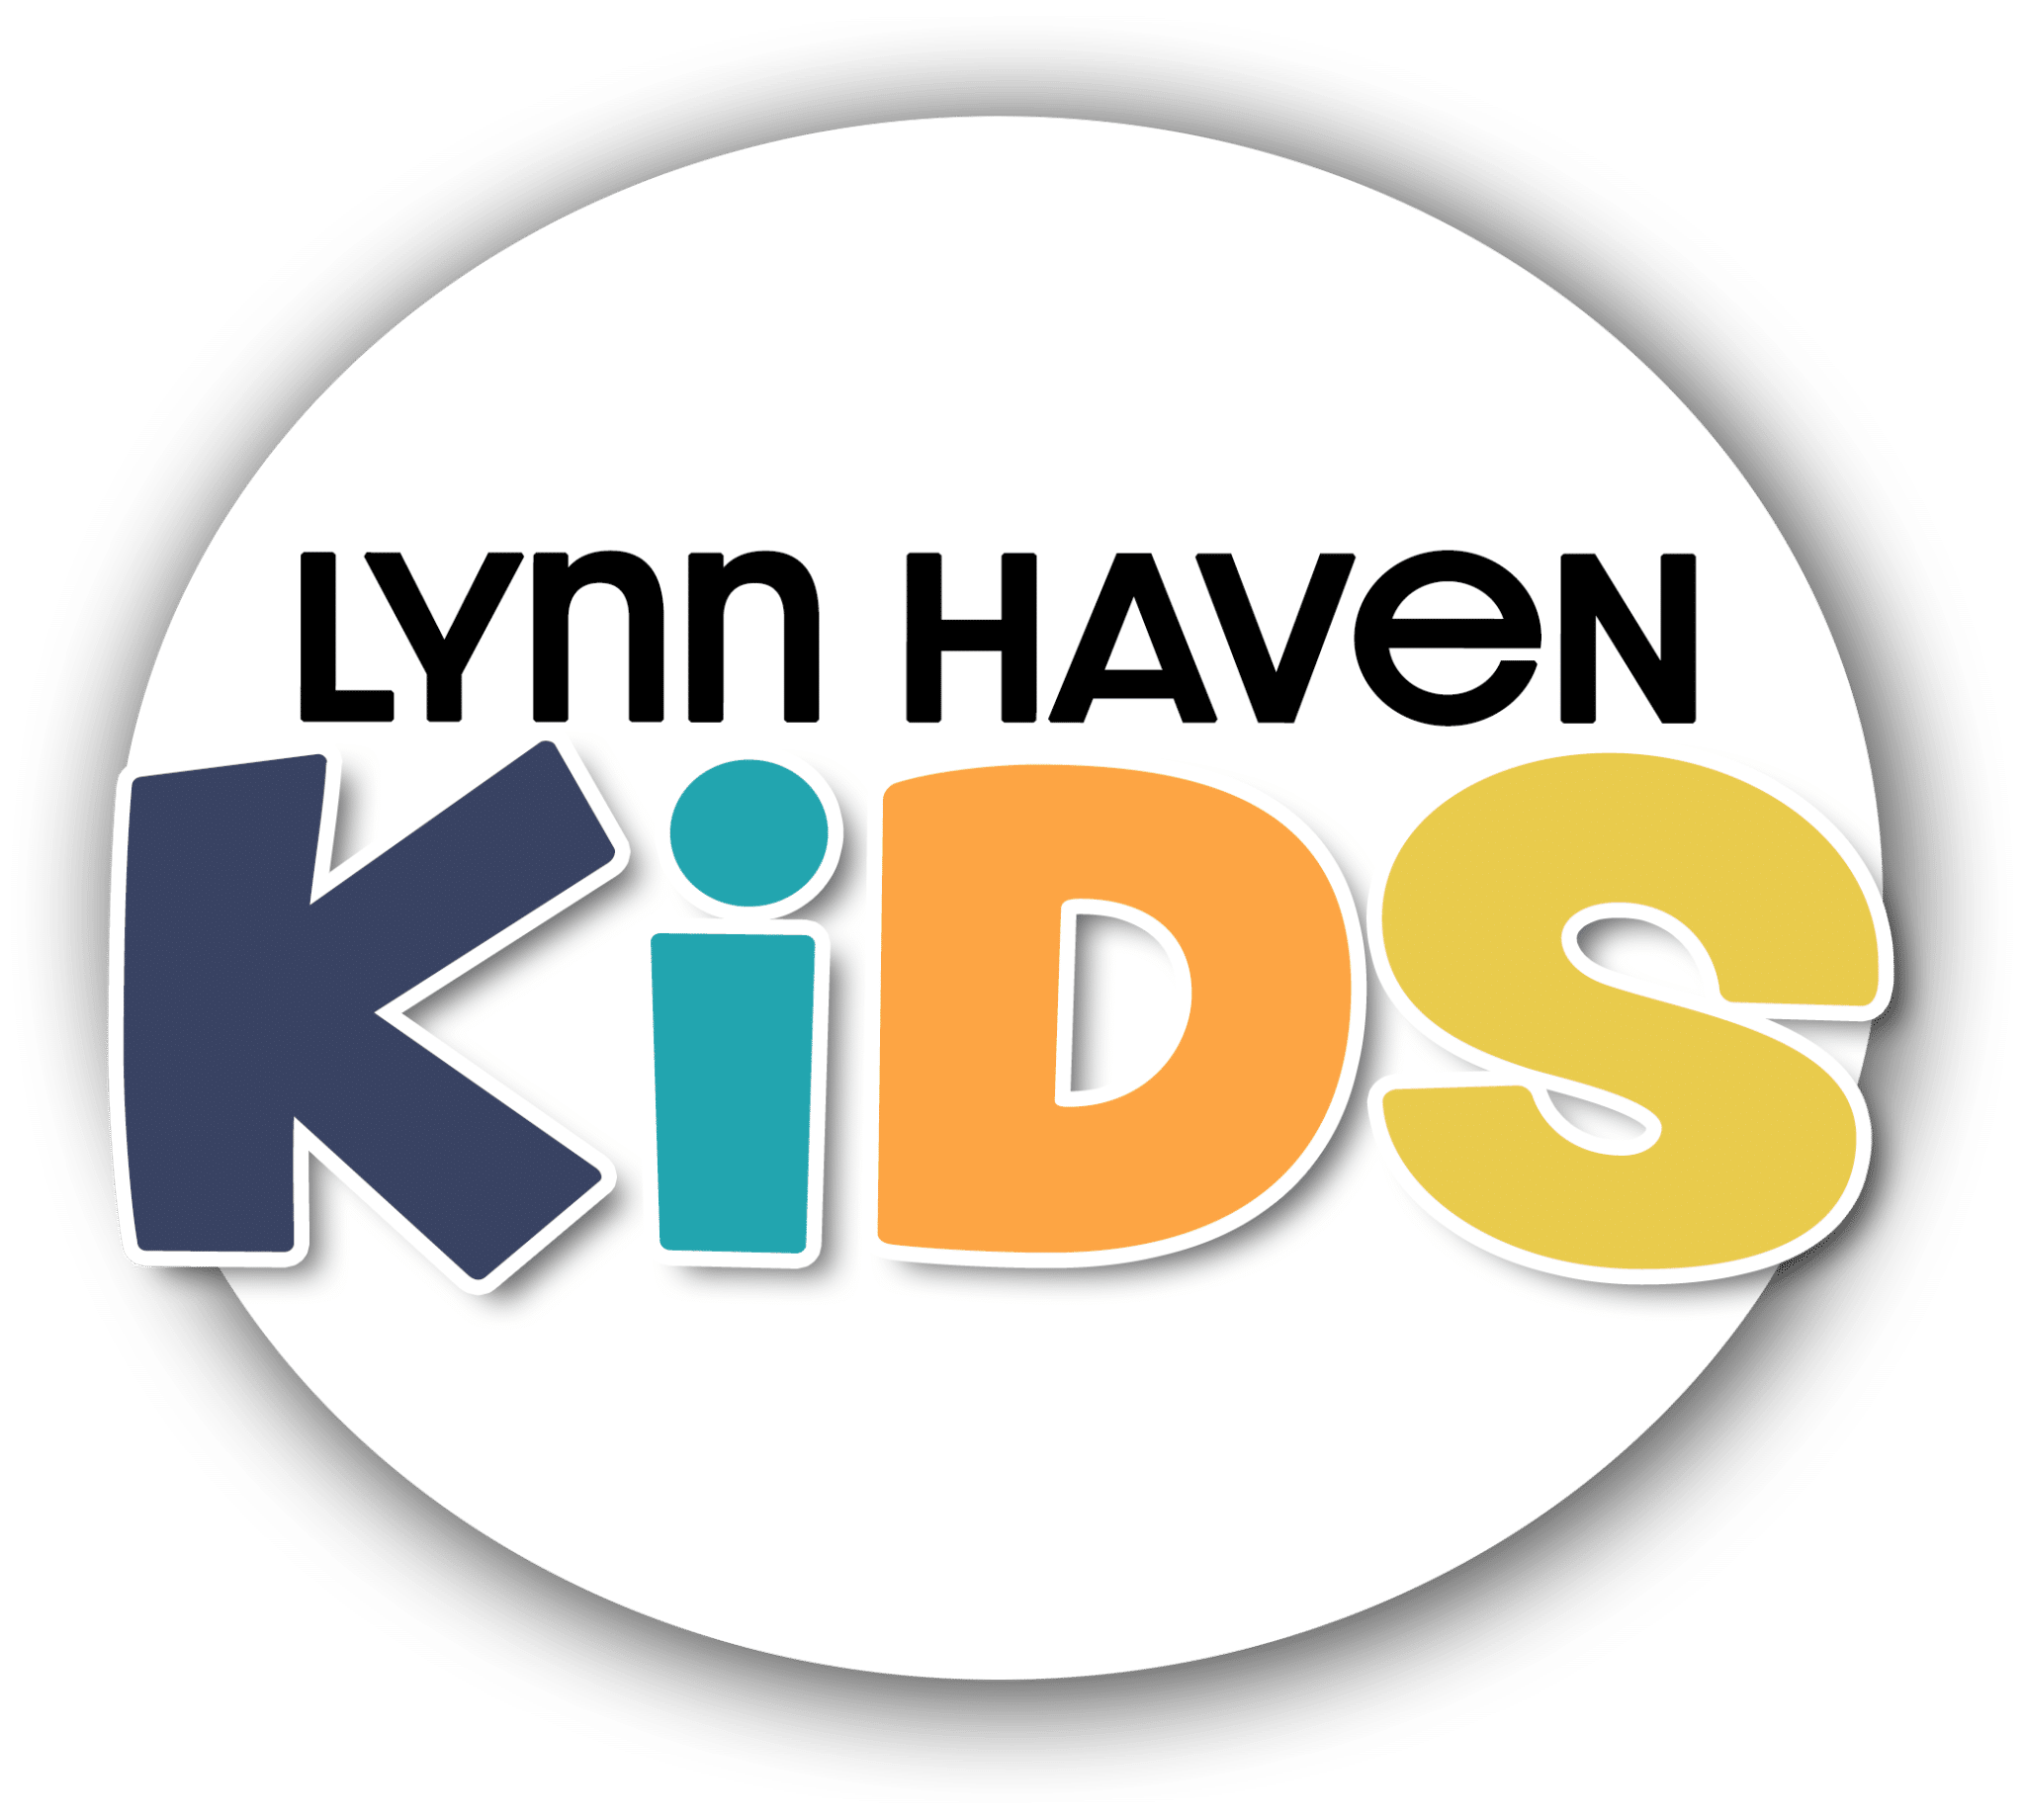 Lynn Haven Methodist Children's Ministry